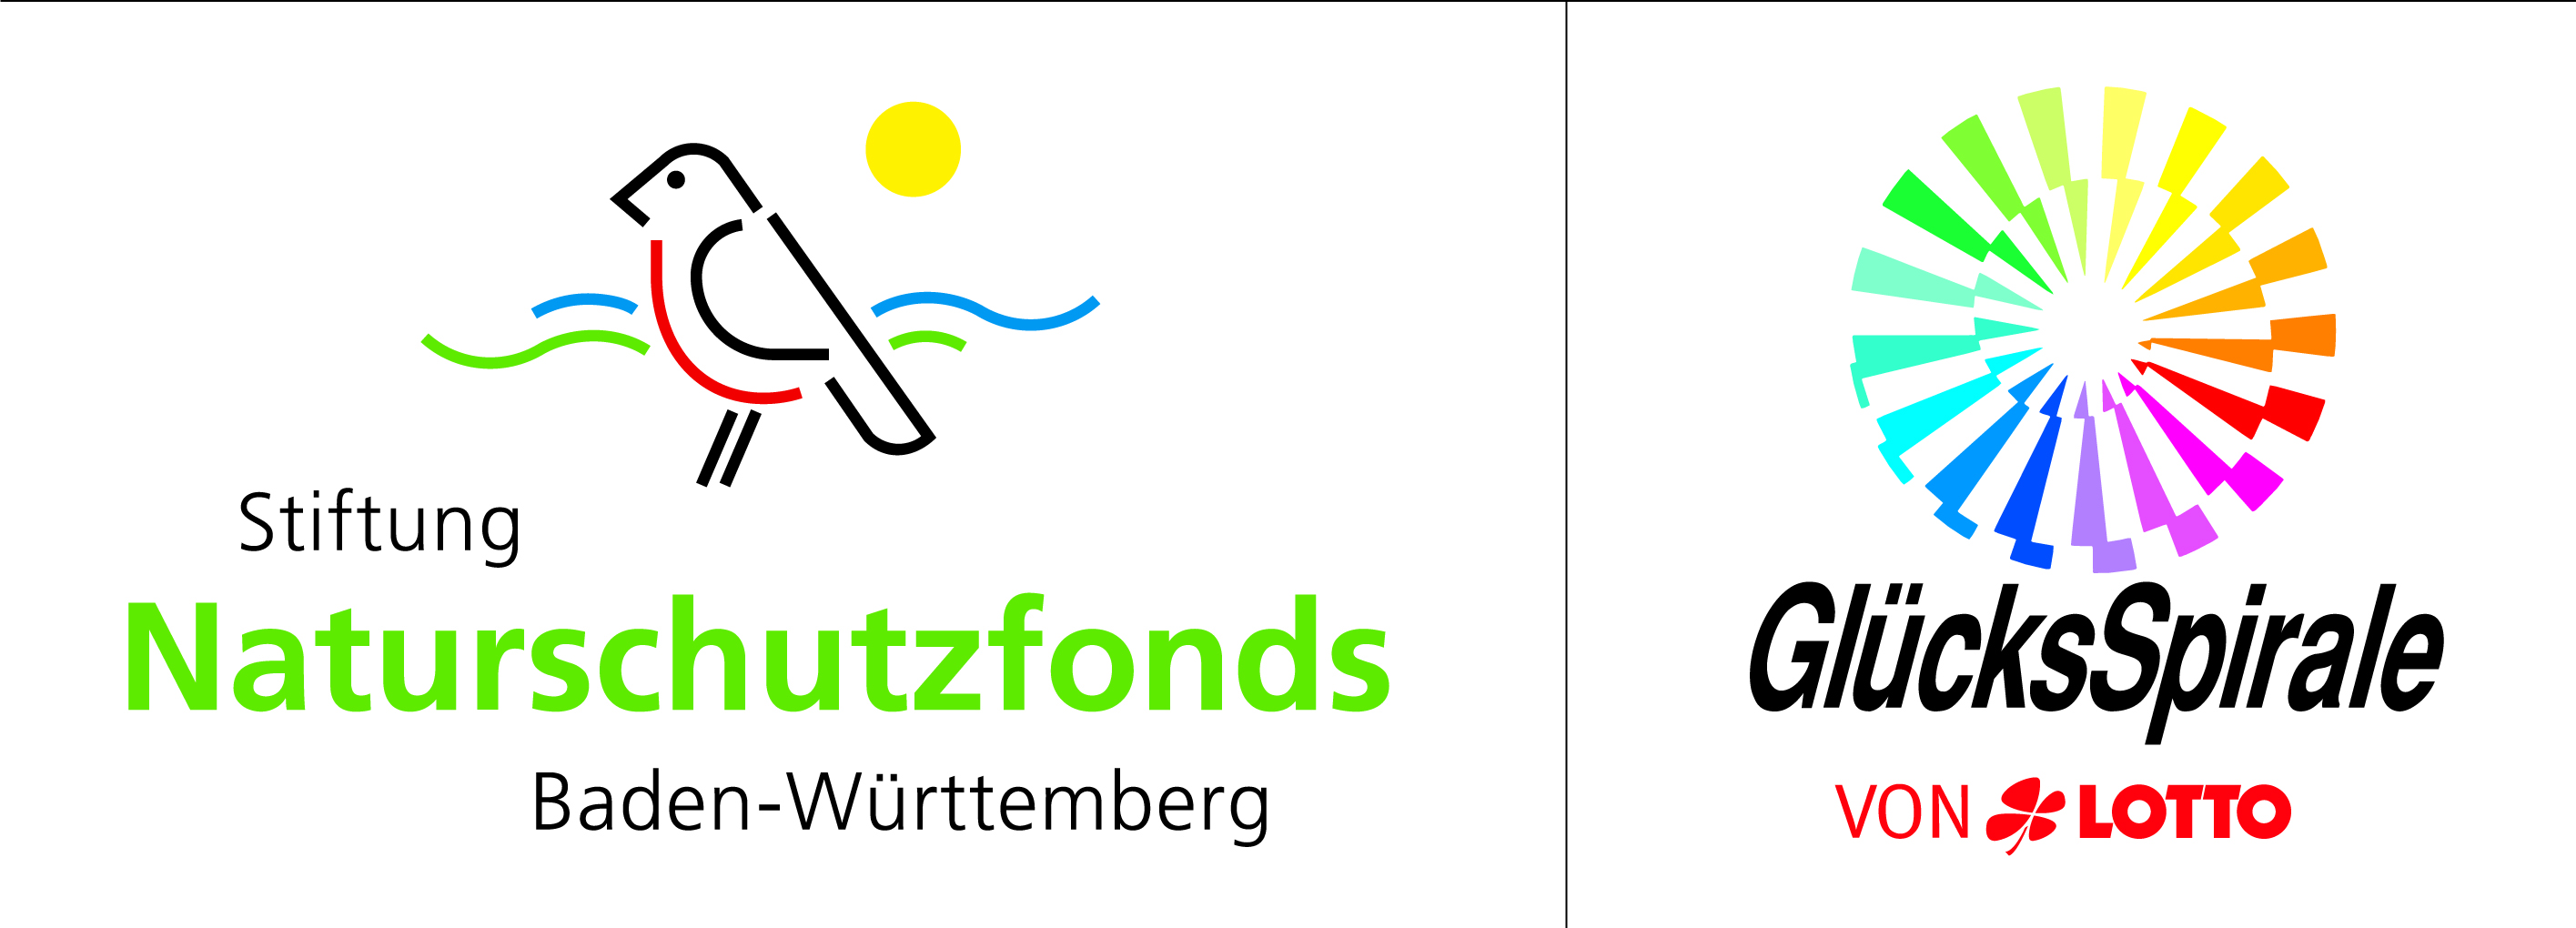 Das Logo der Stiftung Naturschutzfonds Baden-Württemberg ist ein grob skizzierter Vogel mit rotem Bauch. Das Logo der Glücksspirale ist eine Spirale in allen Farben. 